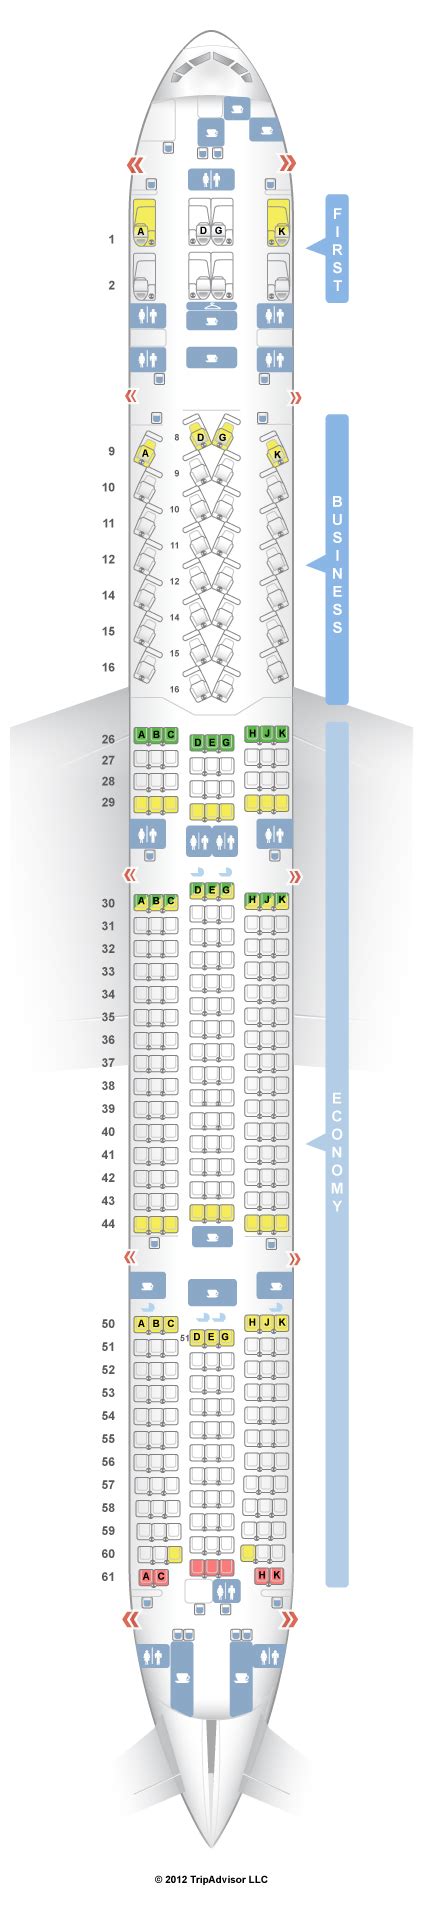 Seatguru Seat Map Turkish Airlines Boeing Er W V